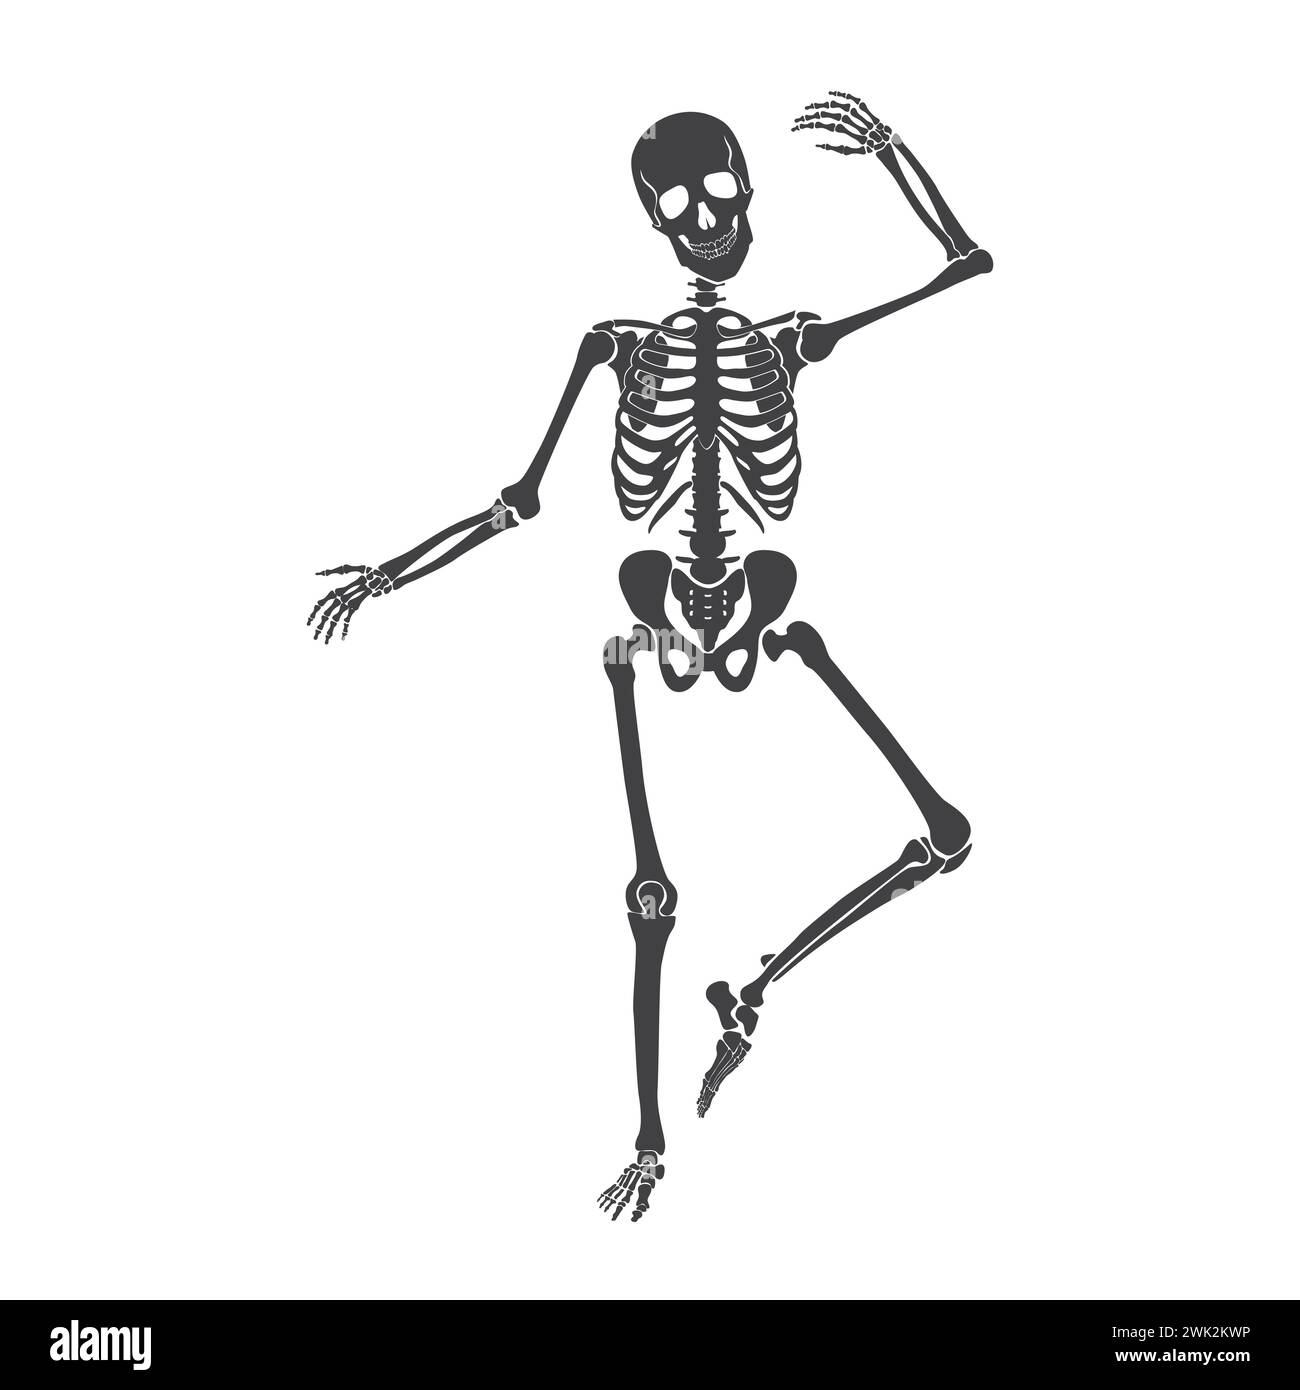 Danse du squelette noir, personnage drôle avec des articulations et la danse du crâne sur l'illustration vectorielle de partie d'Halloween Illustration de Vecteur